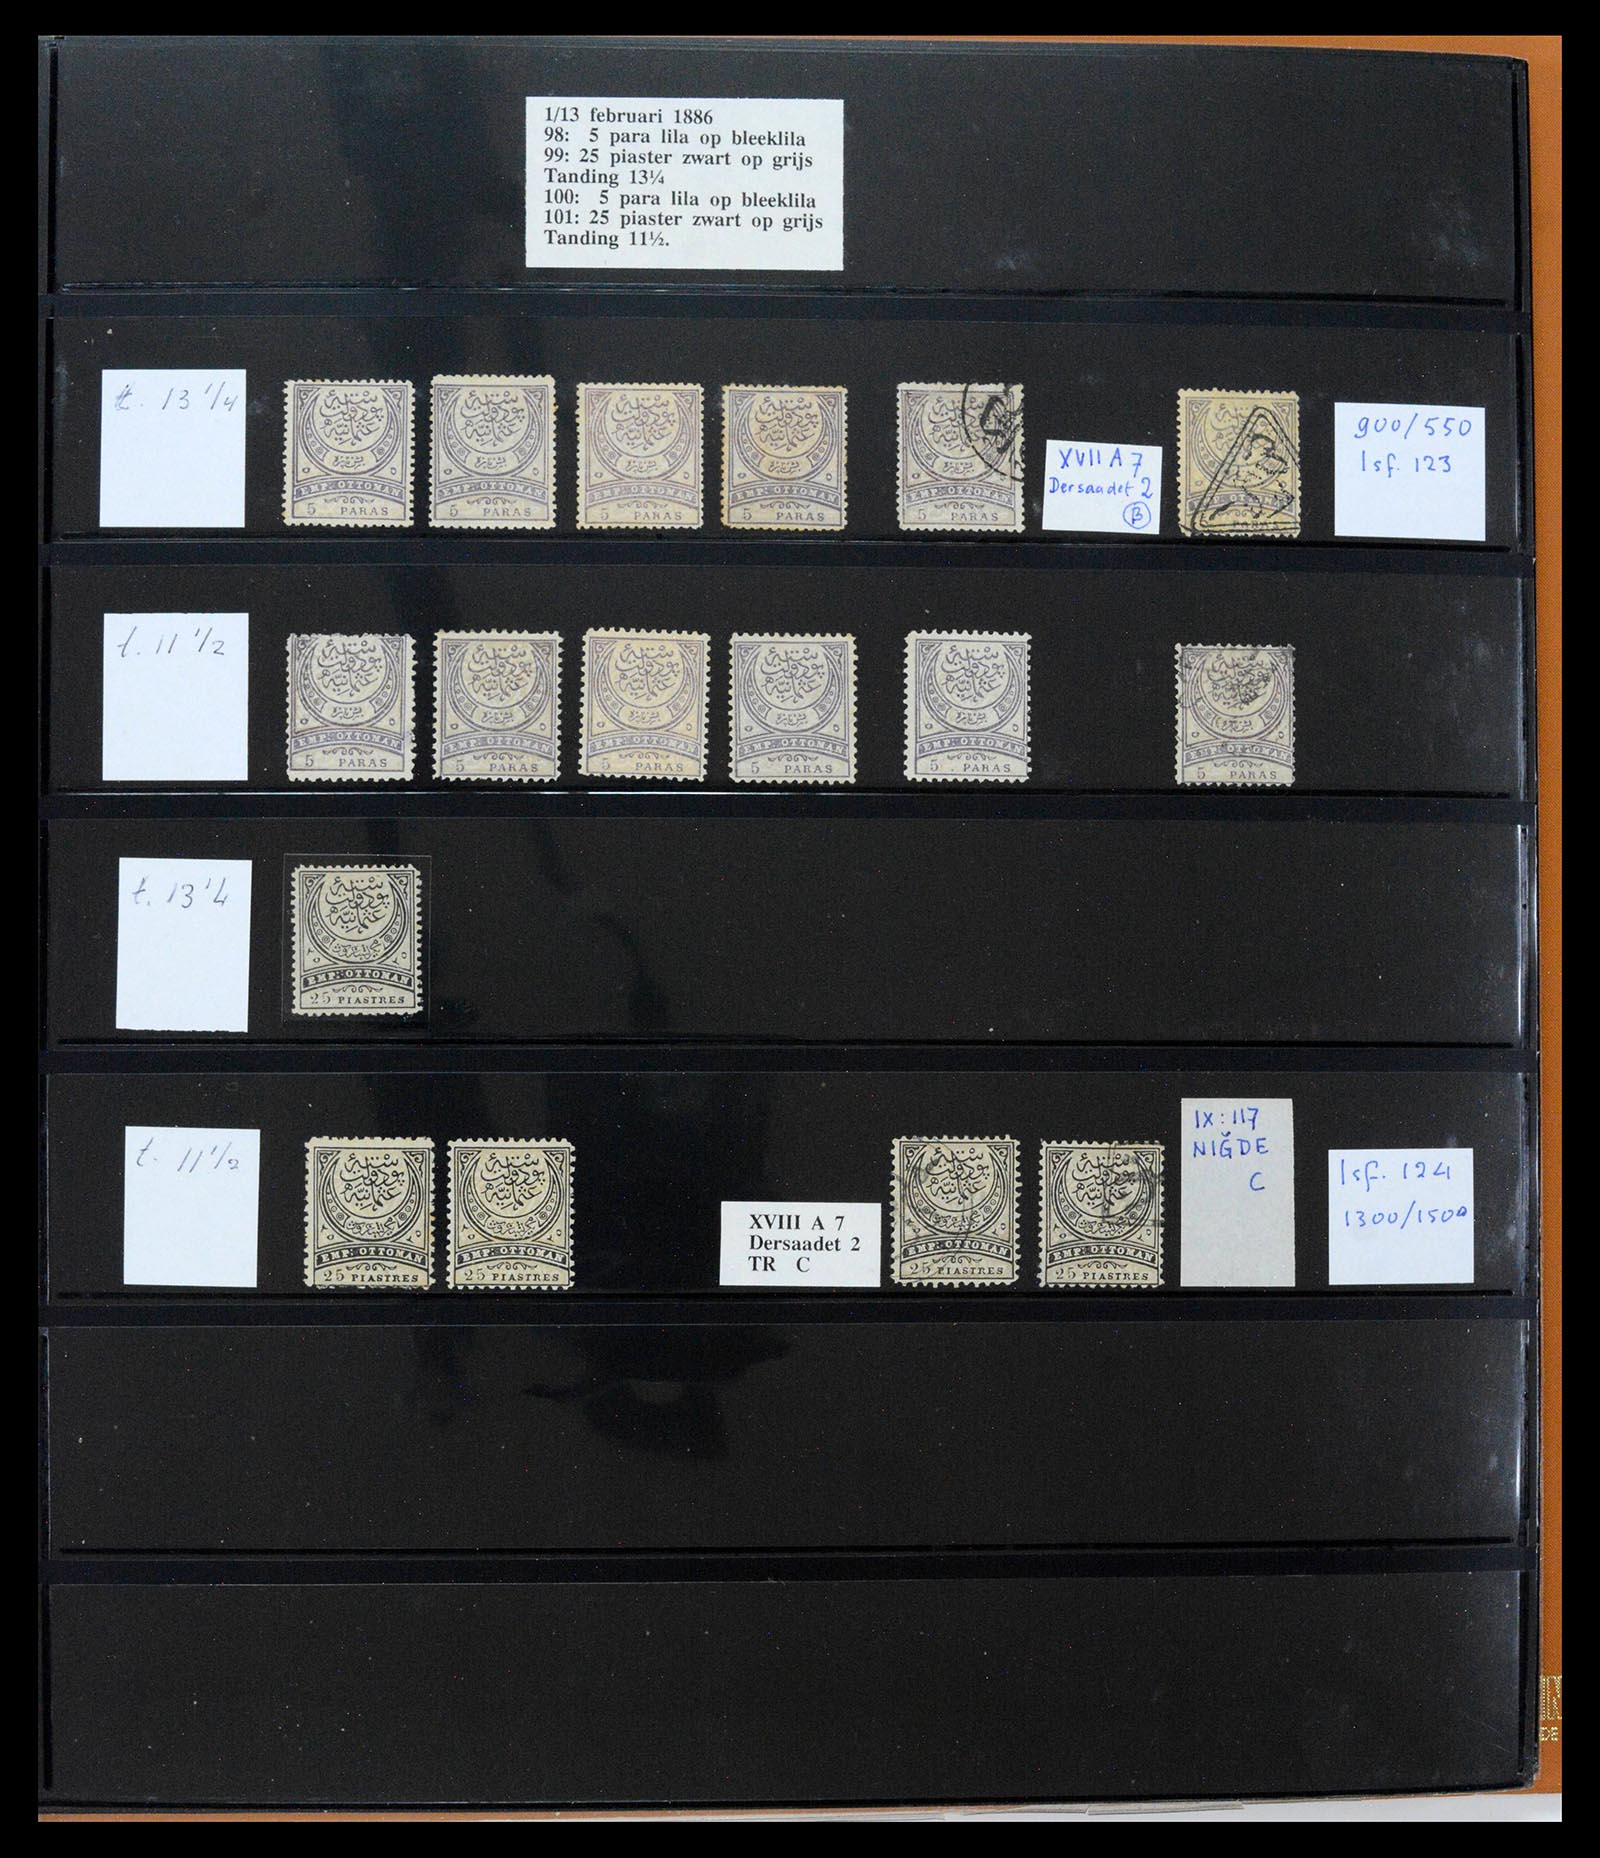 39500 0048 - Postzegelverzameling 39500 Turkije supercollectie 1863-1953.